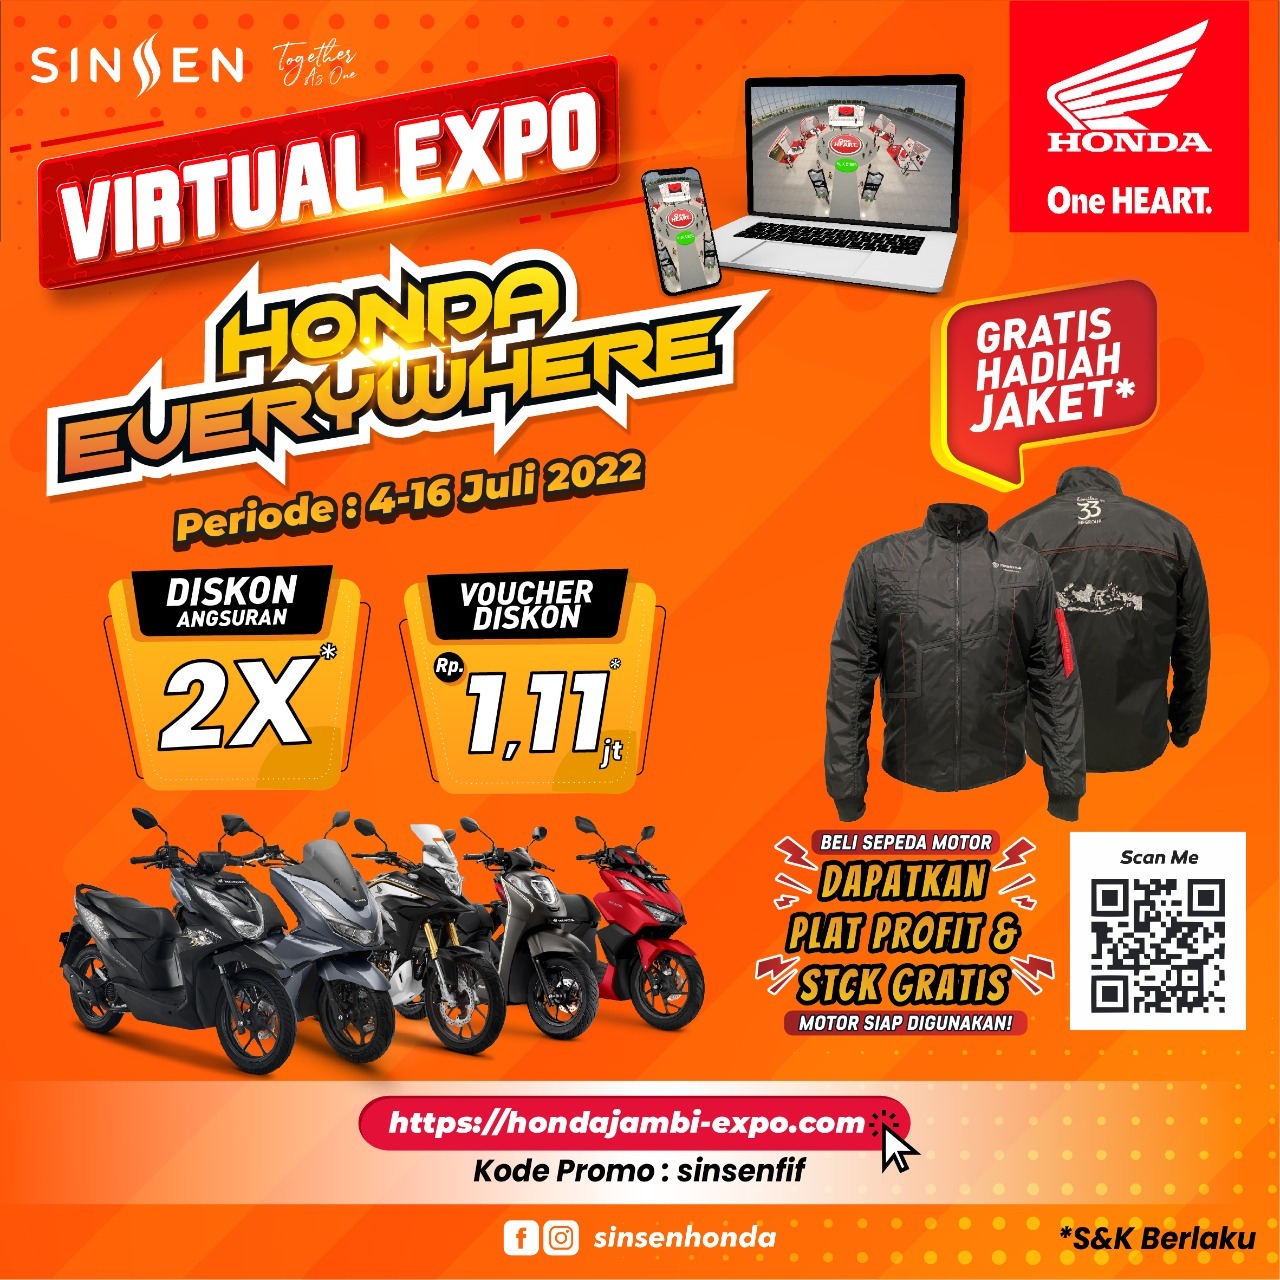 Tawarkan Gratis Angsuran dan Voucher Diskon di Pameran Virtual Expo Honda